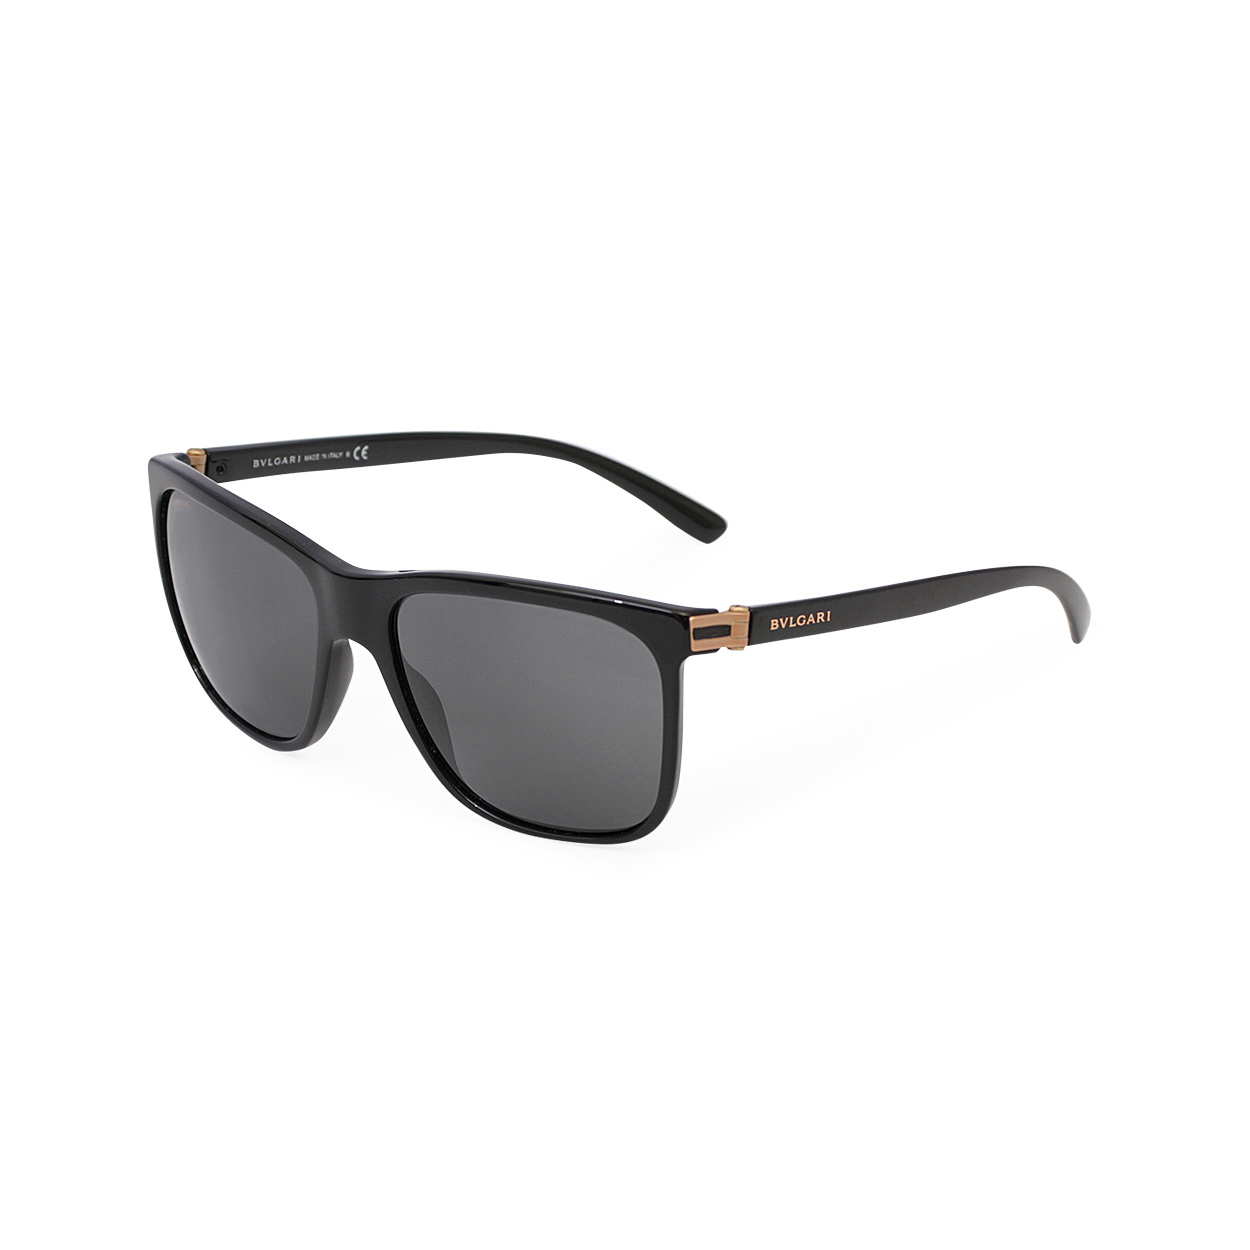 BVLGARI Sunglasses 7027 Black | Luxity